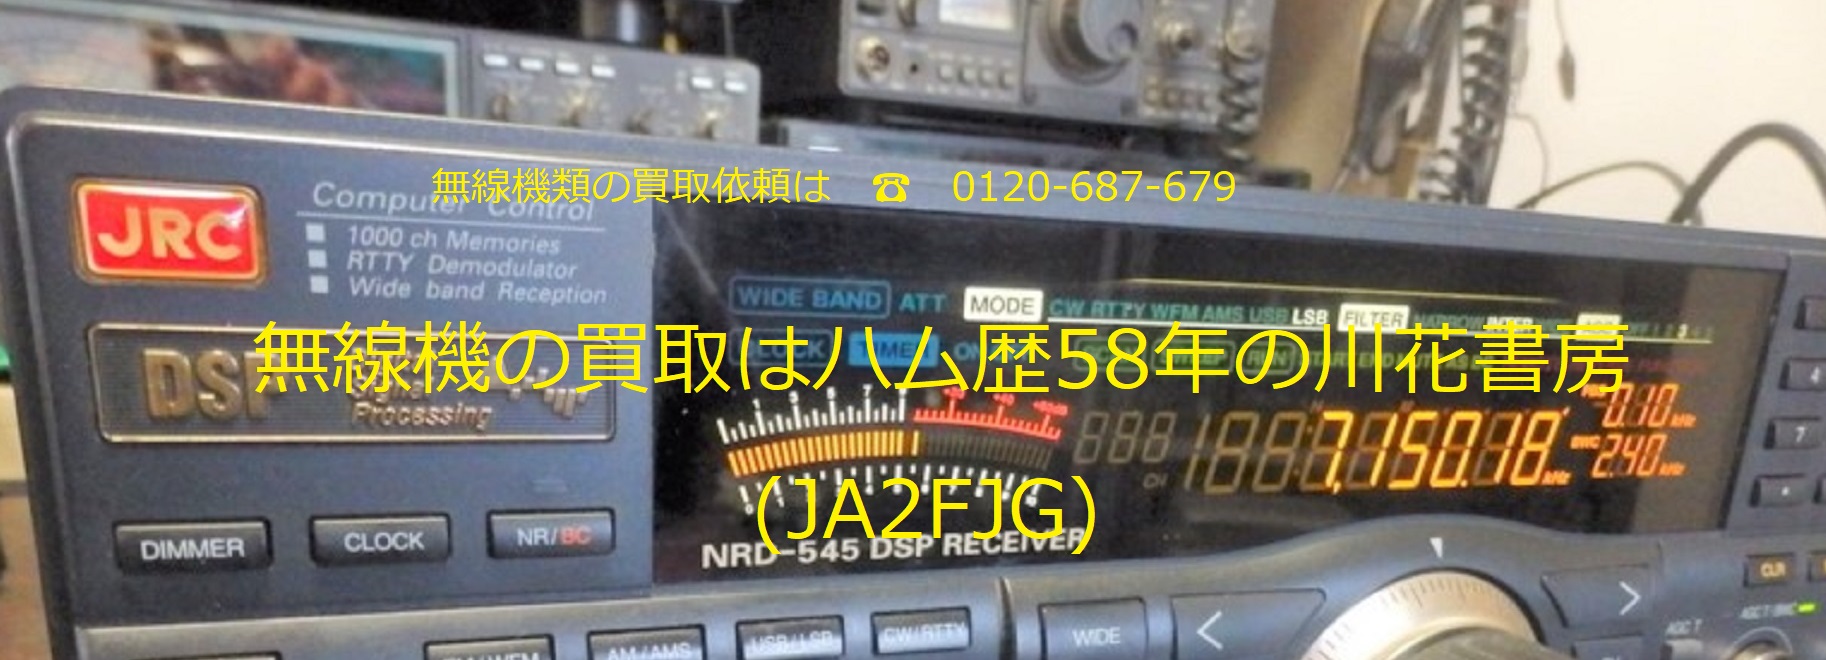 無線機の買取はハム歴58年の川花書房(JA2FJG)